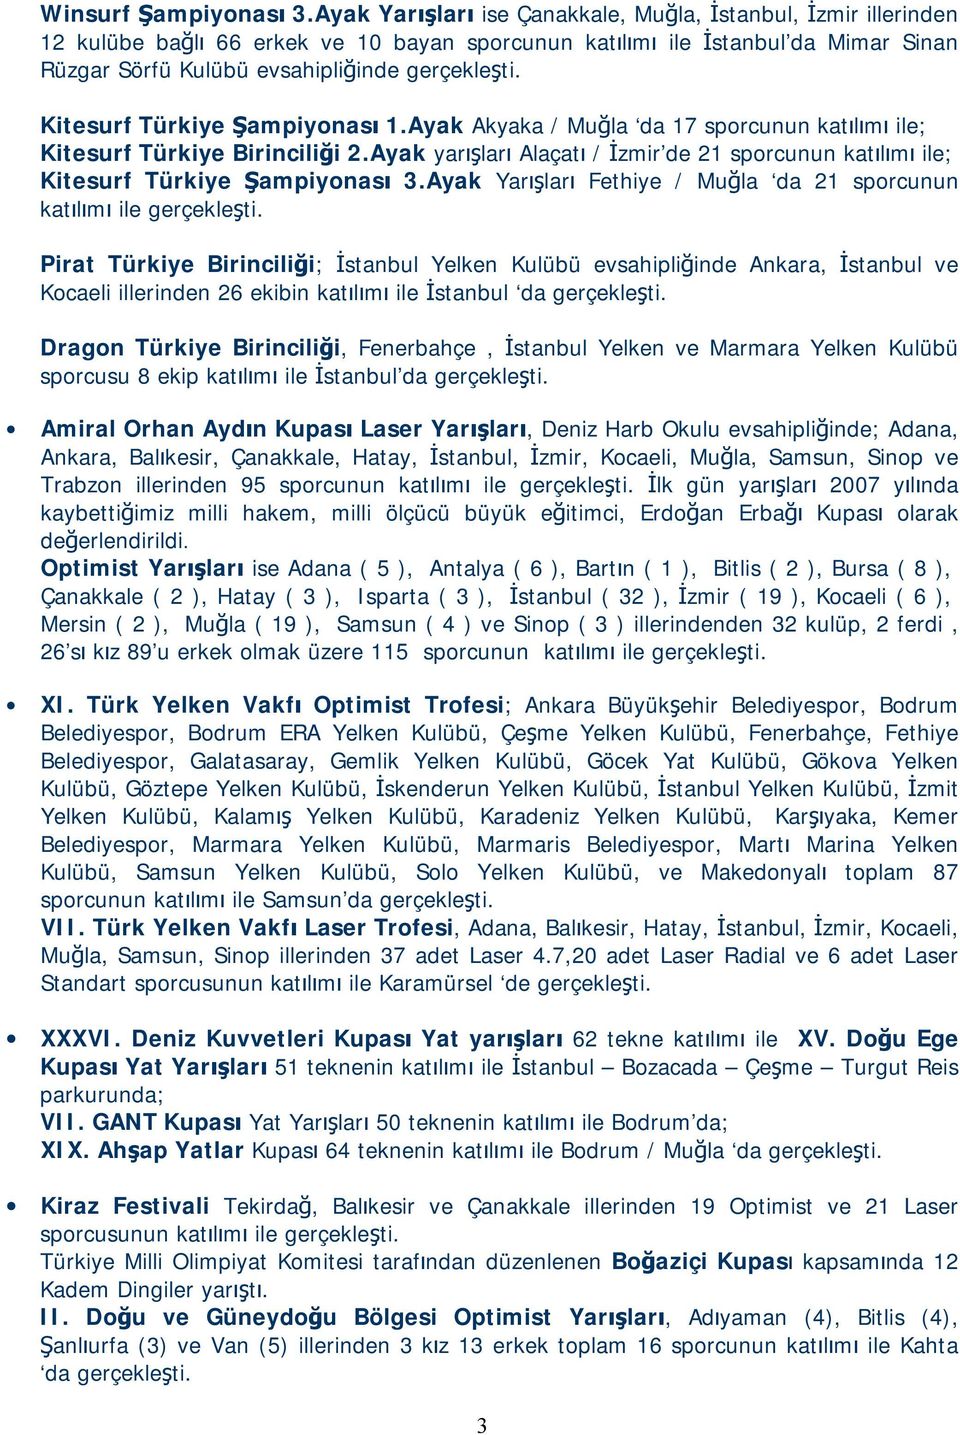 Kitesurf Türkiye Şampiyonası 1.Ayak Akyaka / Muğla da 17 sporcunun katılımı ile; Kitesurf Türkiye Birinciliği 2.